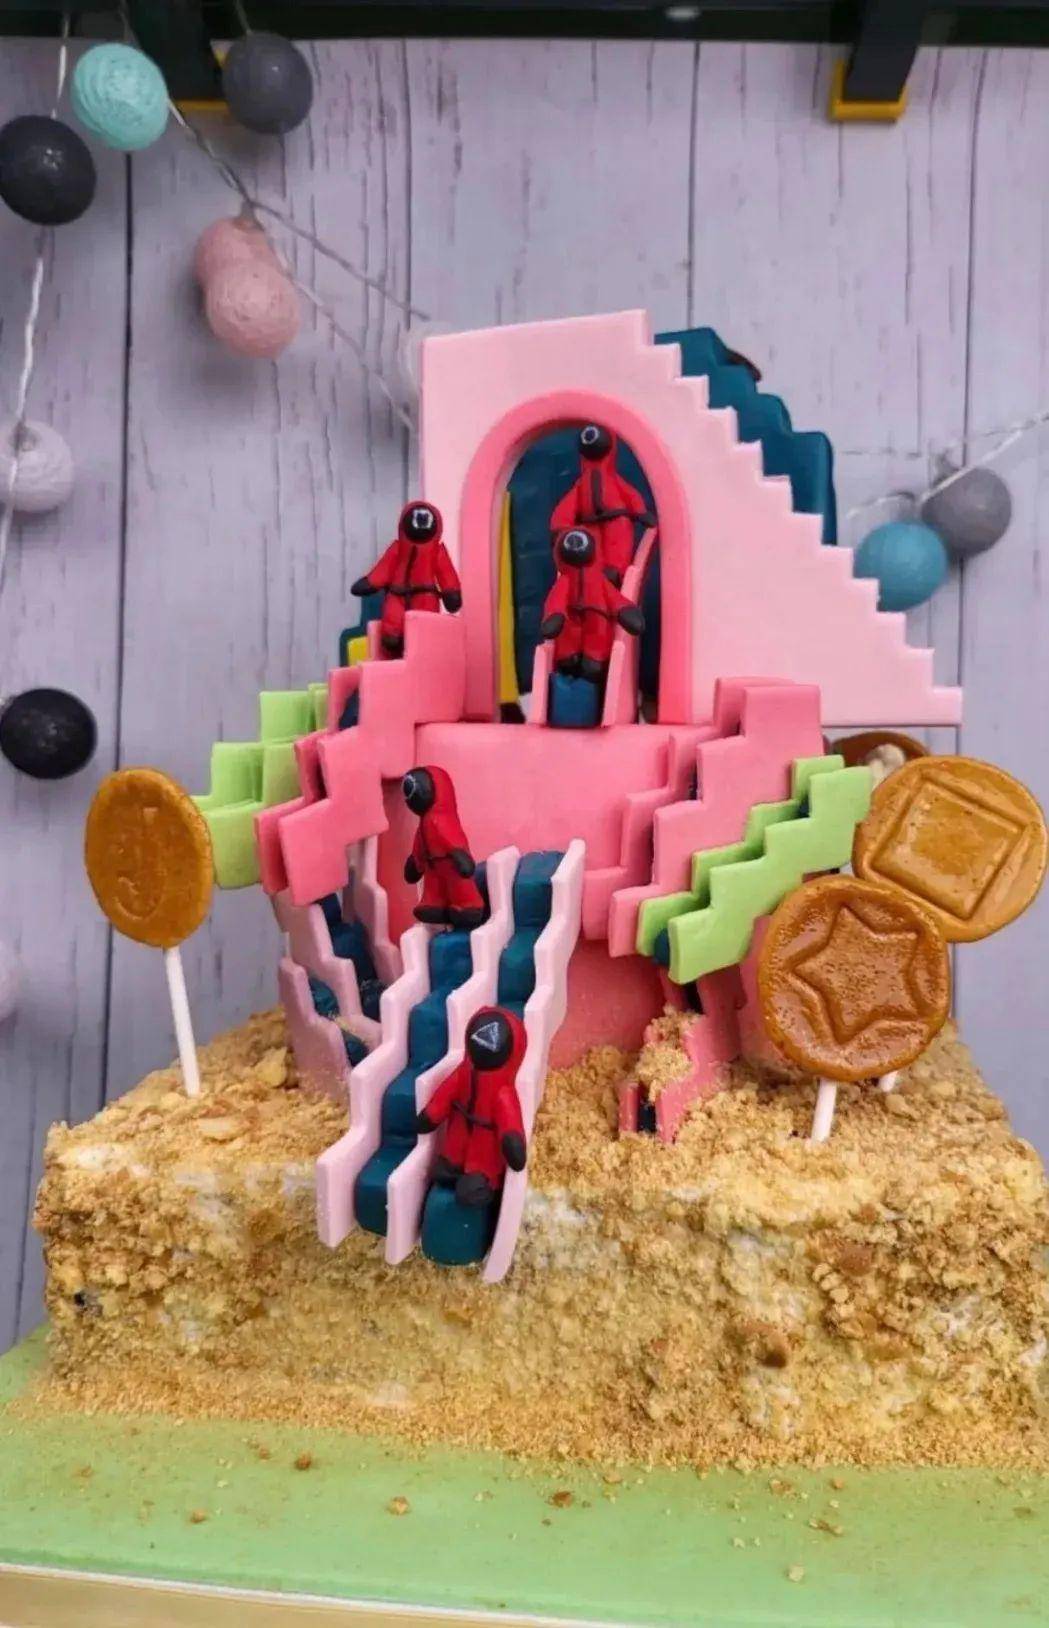 蔡依林做的翻糖蛋糕图片